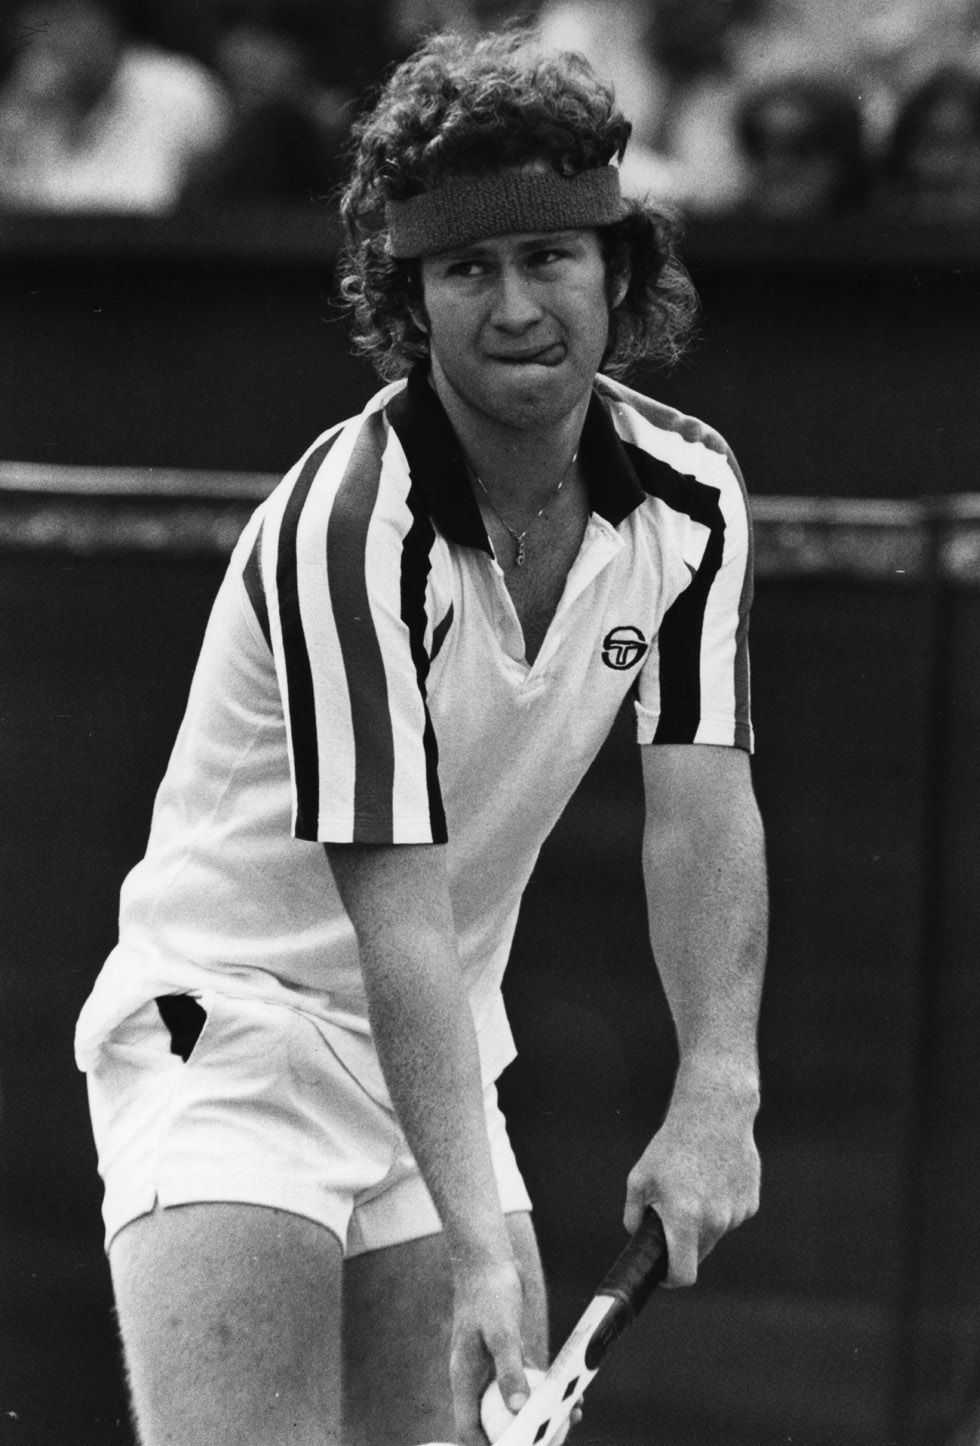 Джон макинрой — легенда тенниса, музыкант и скандальная личность. теннисист макинрой